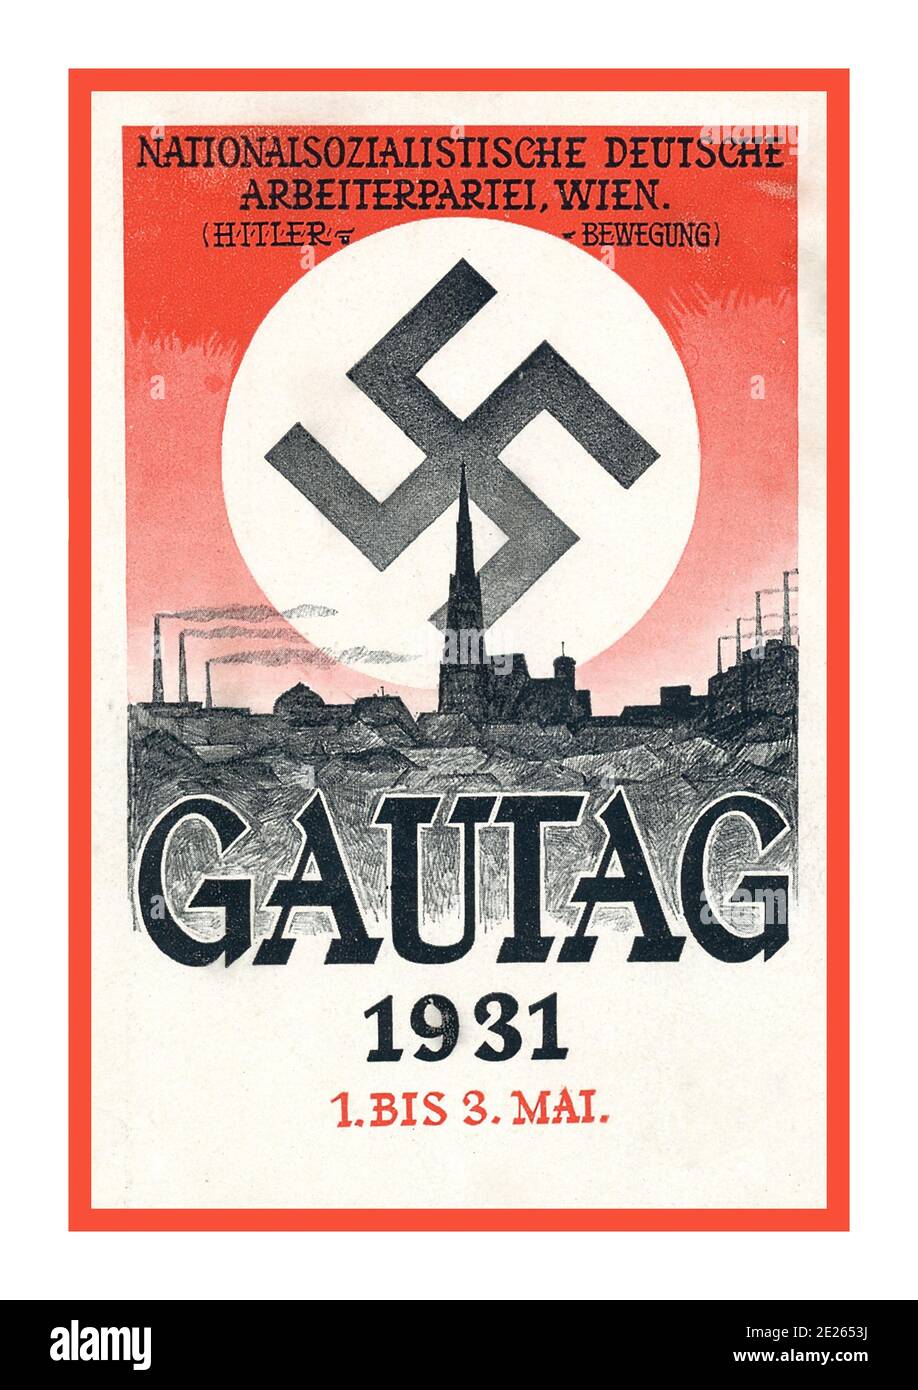 Les années 1930 Nazi GAUTAG 1931 NSDAP propagande autrichienne affiche avec l'emblème de Swastika comme un soleil éclatant : 1931 Autriche Parti nazi Gau Wien réunion régionale publicité propagande. Le NSDAP était toujours appelé « Hitlerbewegung » / « mouvement Hitler » Banque D'Images